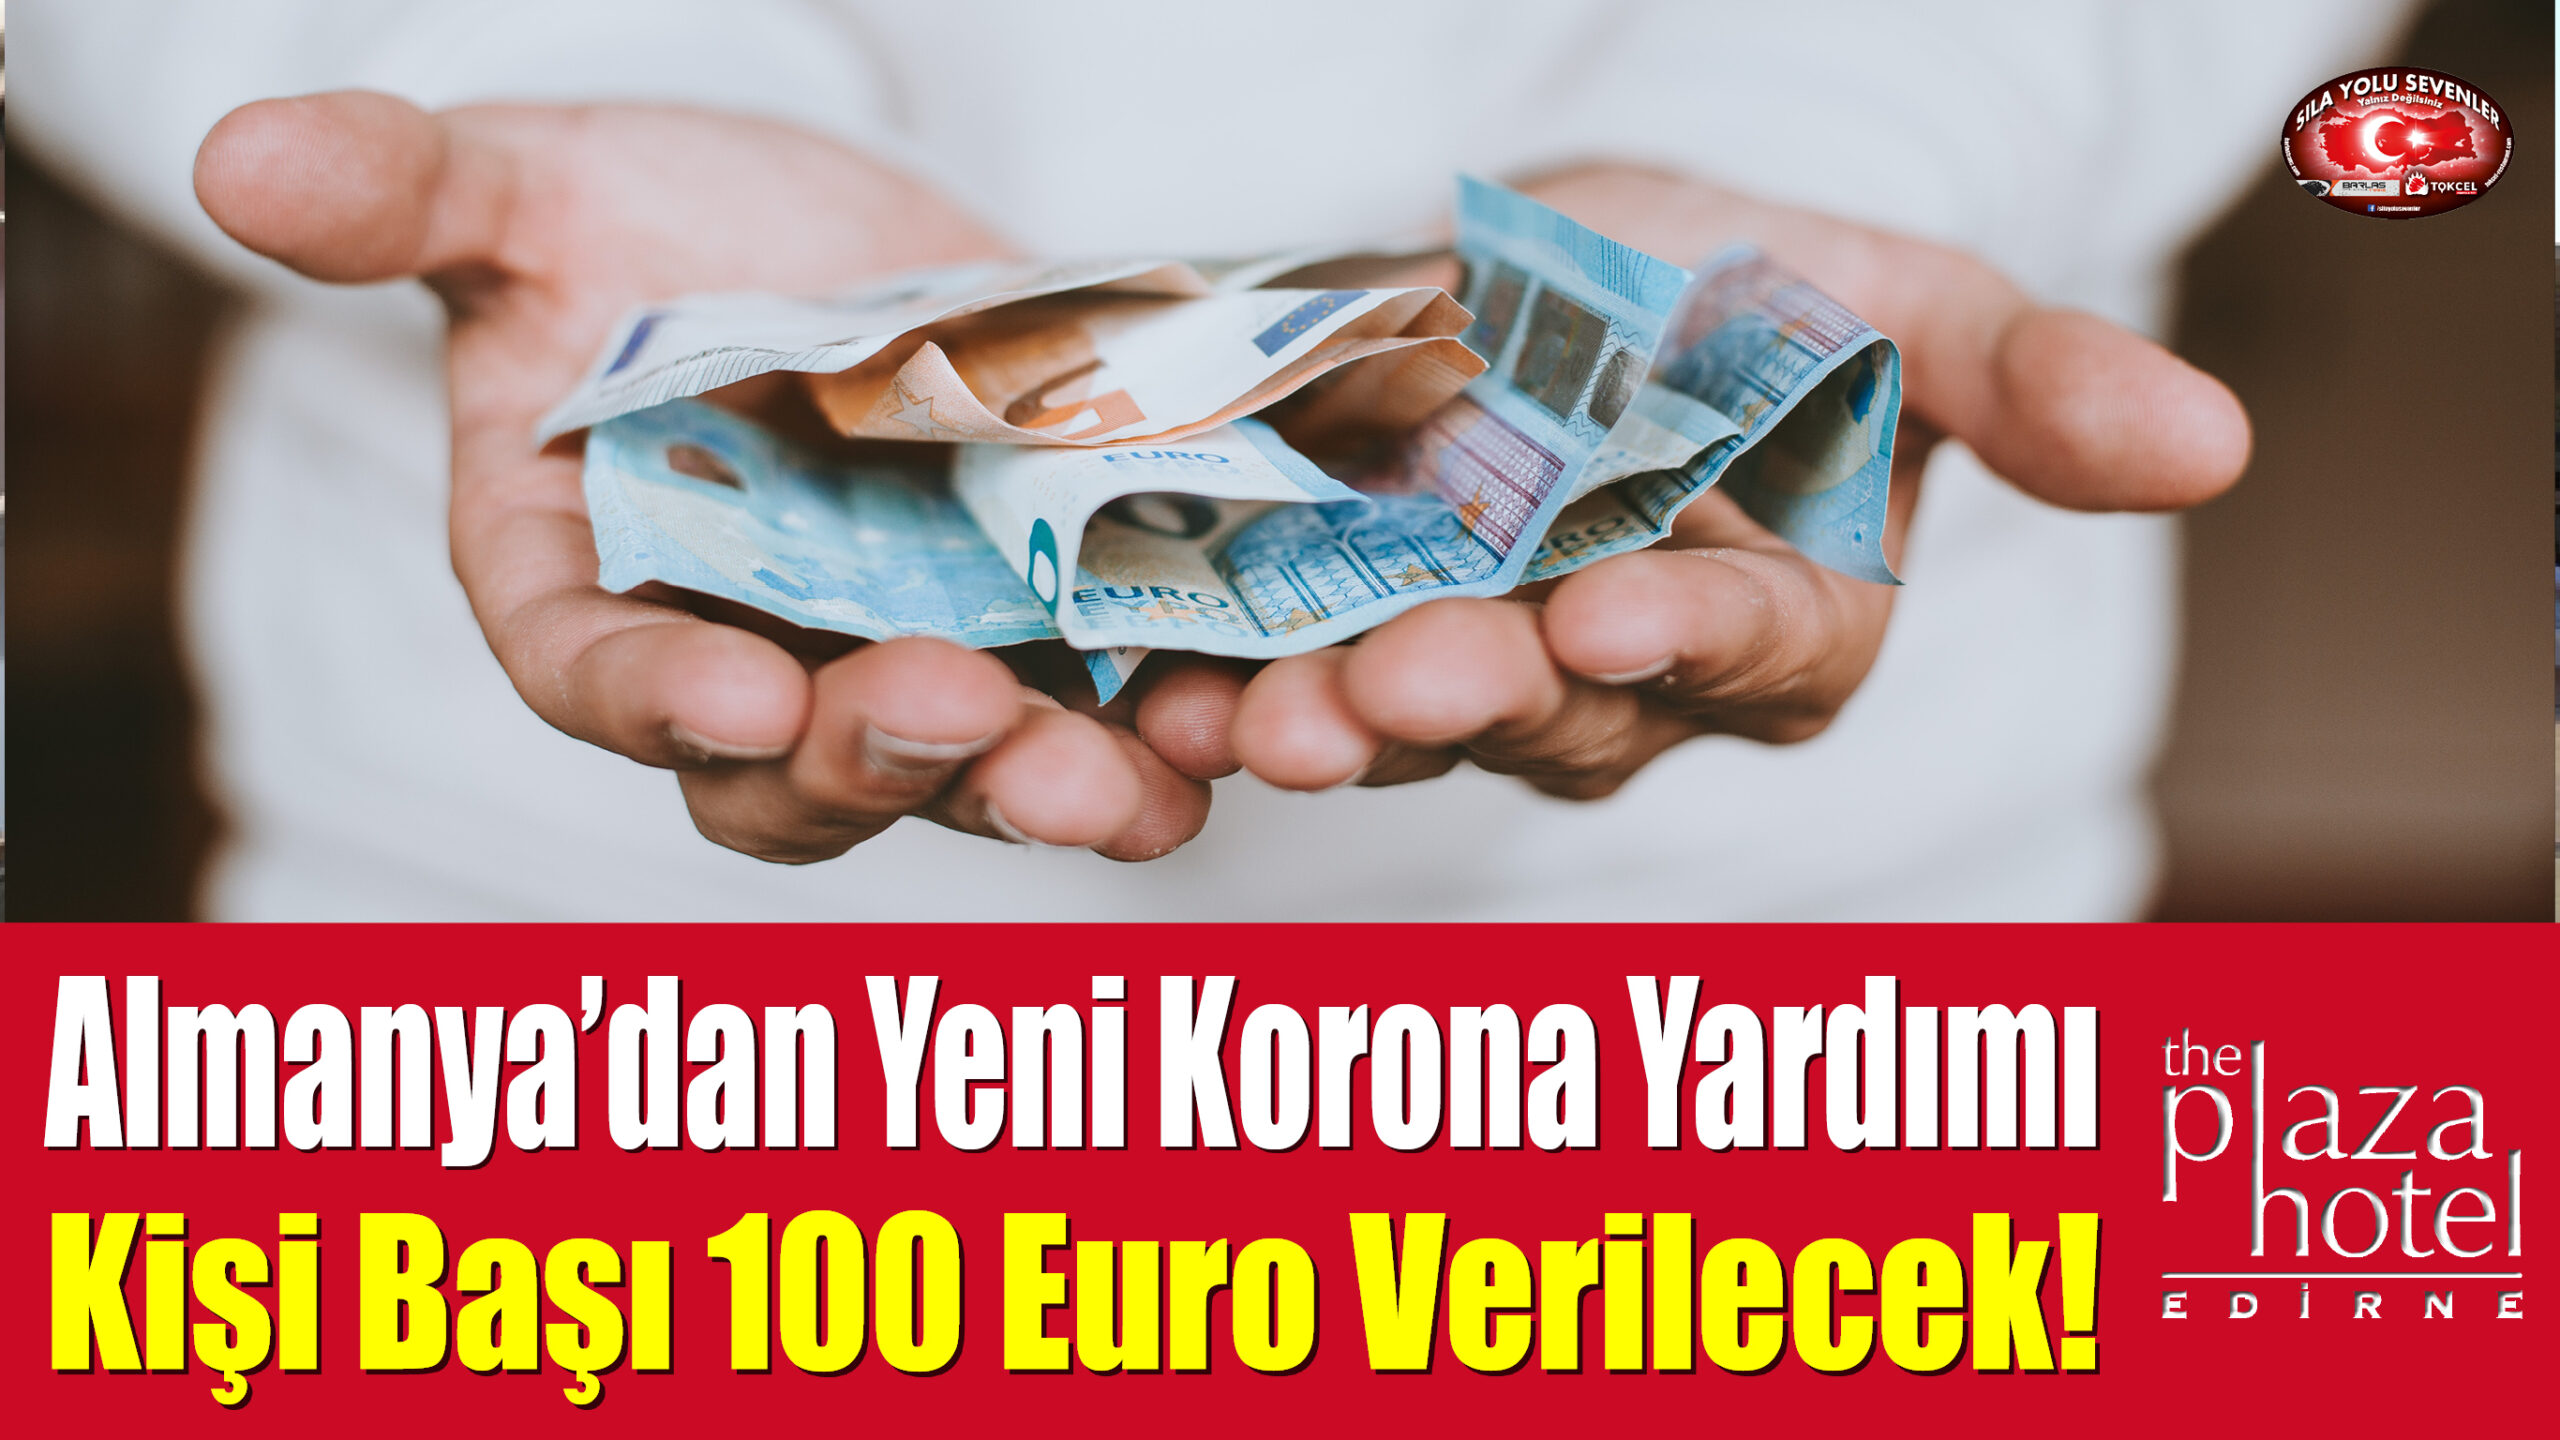 Almanya’dan Dar Gelirlilere Yeni Korona Yardımı: Kişi Başı 100 Euro Verilecek!